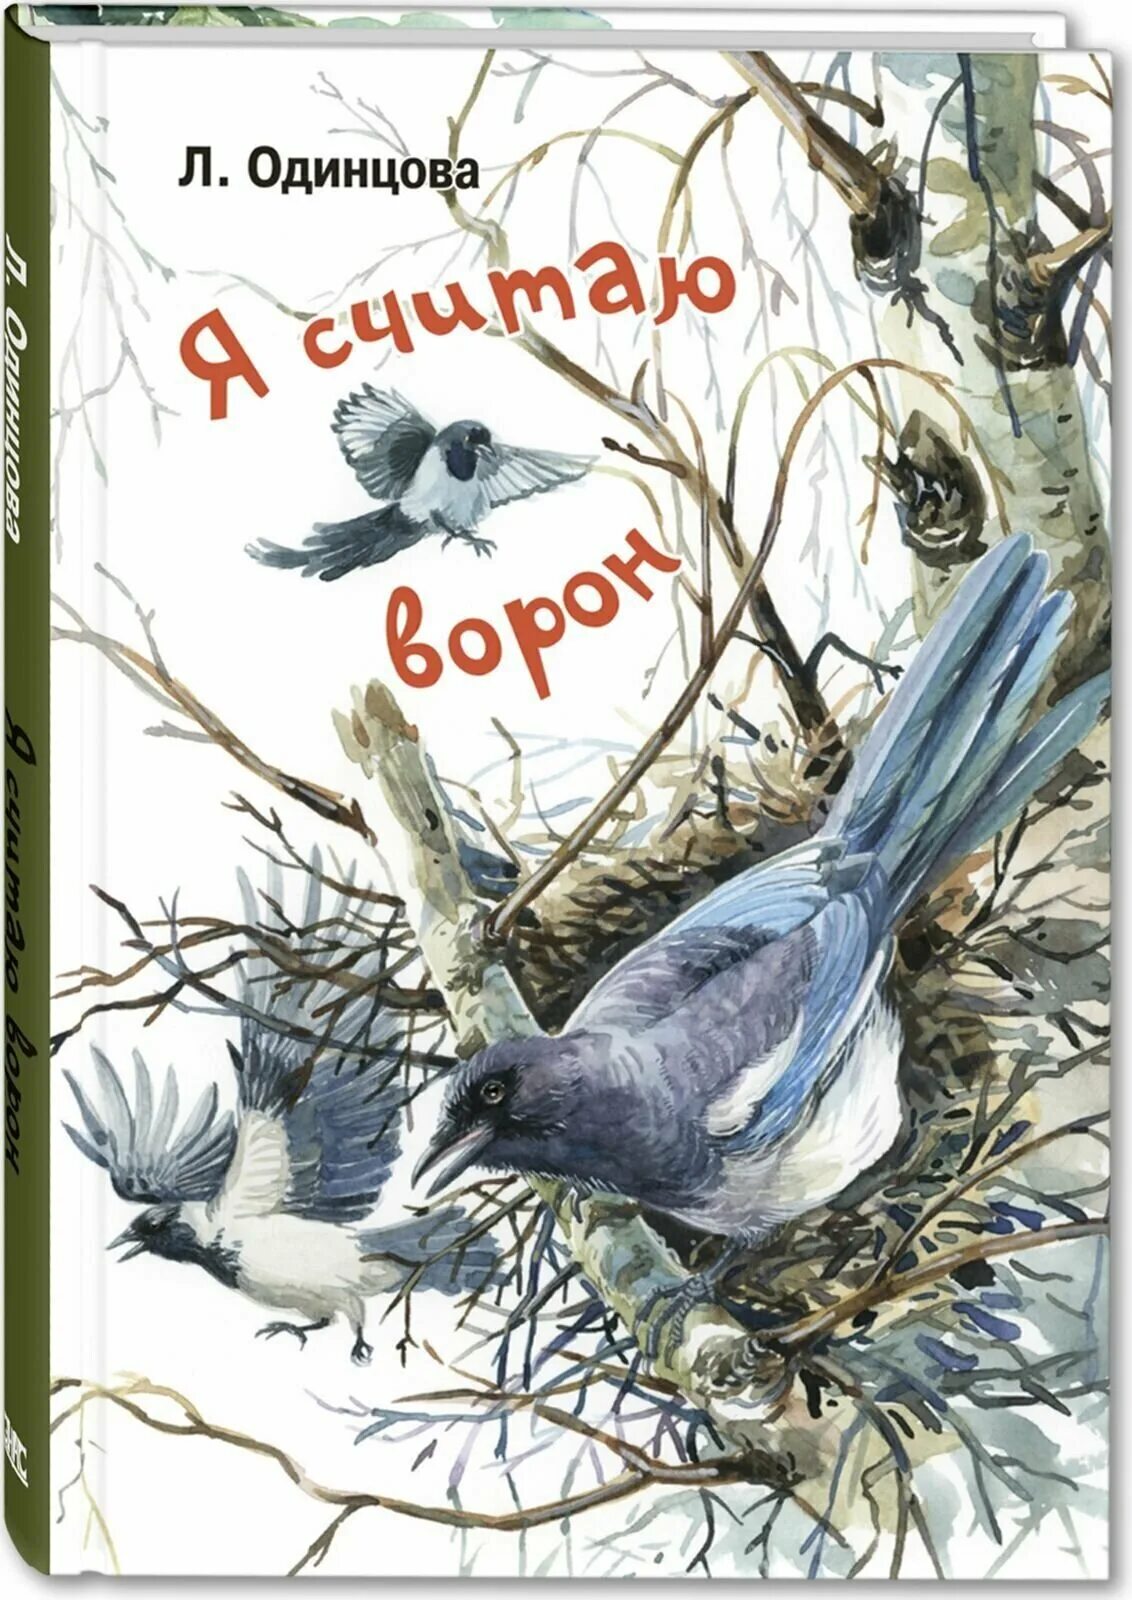 Книга про ворон. Одинцова, л. я считаю ворон : две истории из жизни птиц и людей. Одинцова л. "я считаю ворон". Книга о воронах.